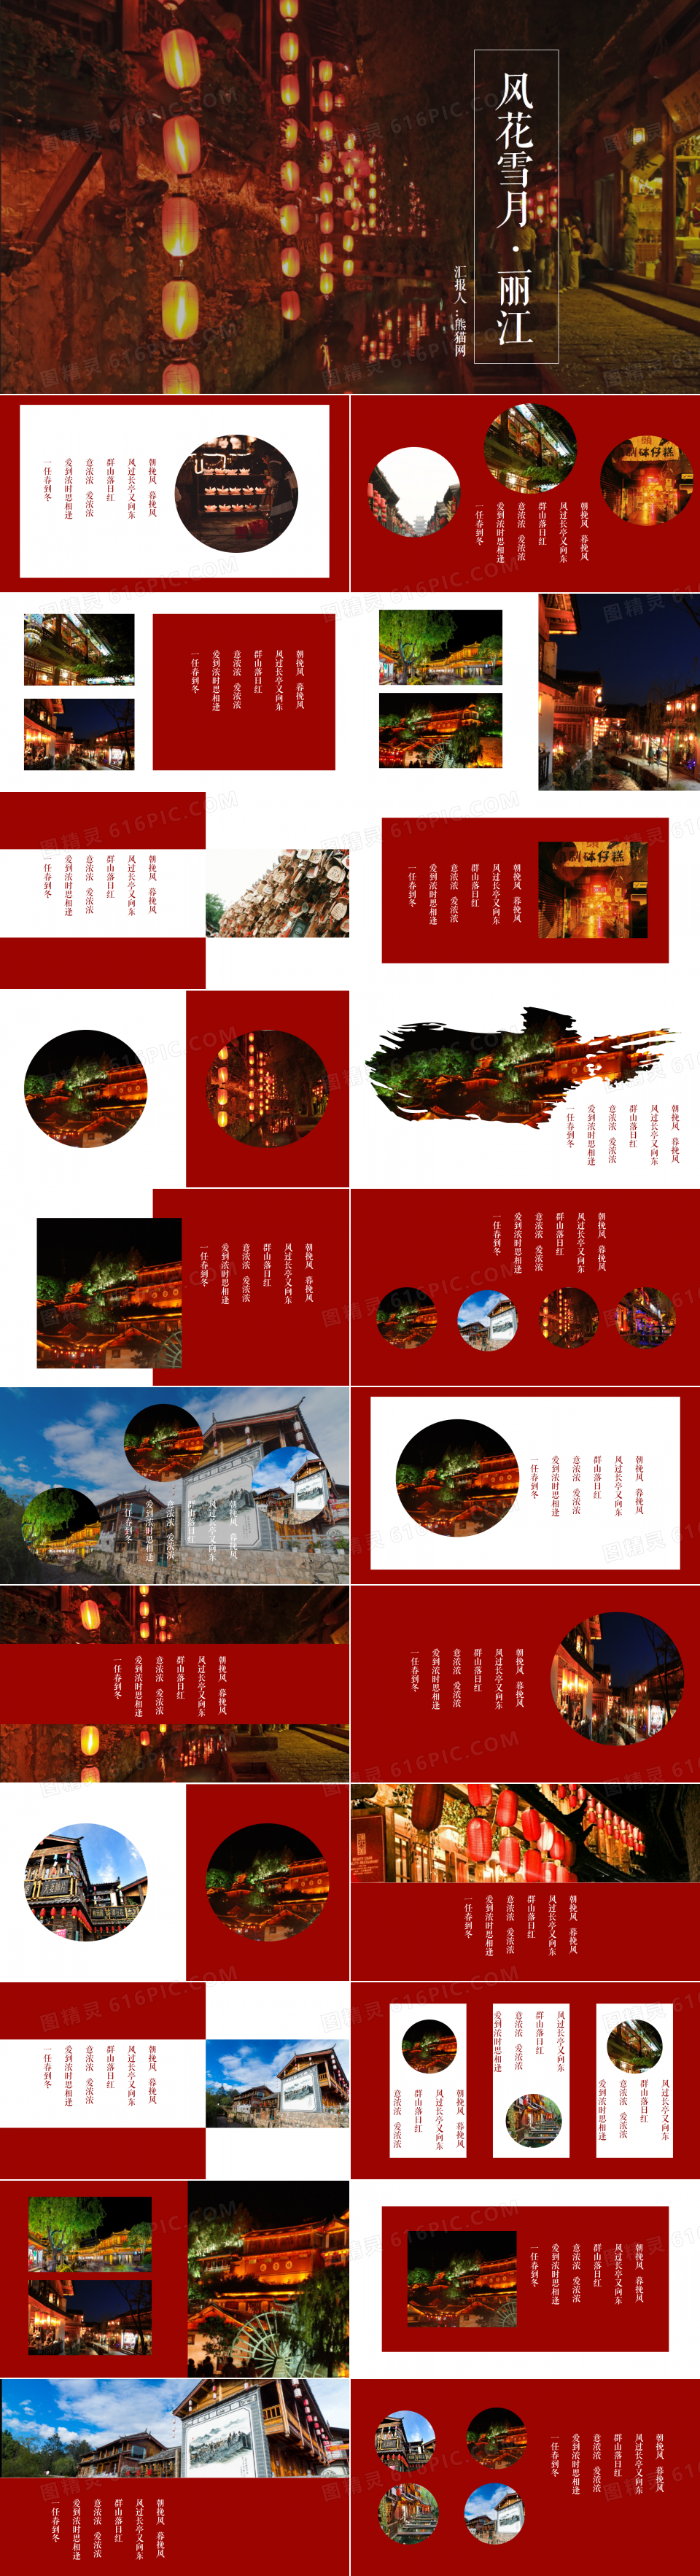 丽江红色杂志风文艺相册旅游宣传PPT模板